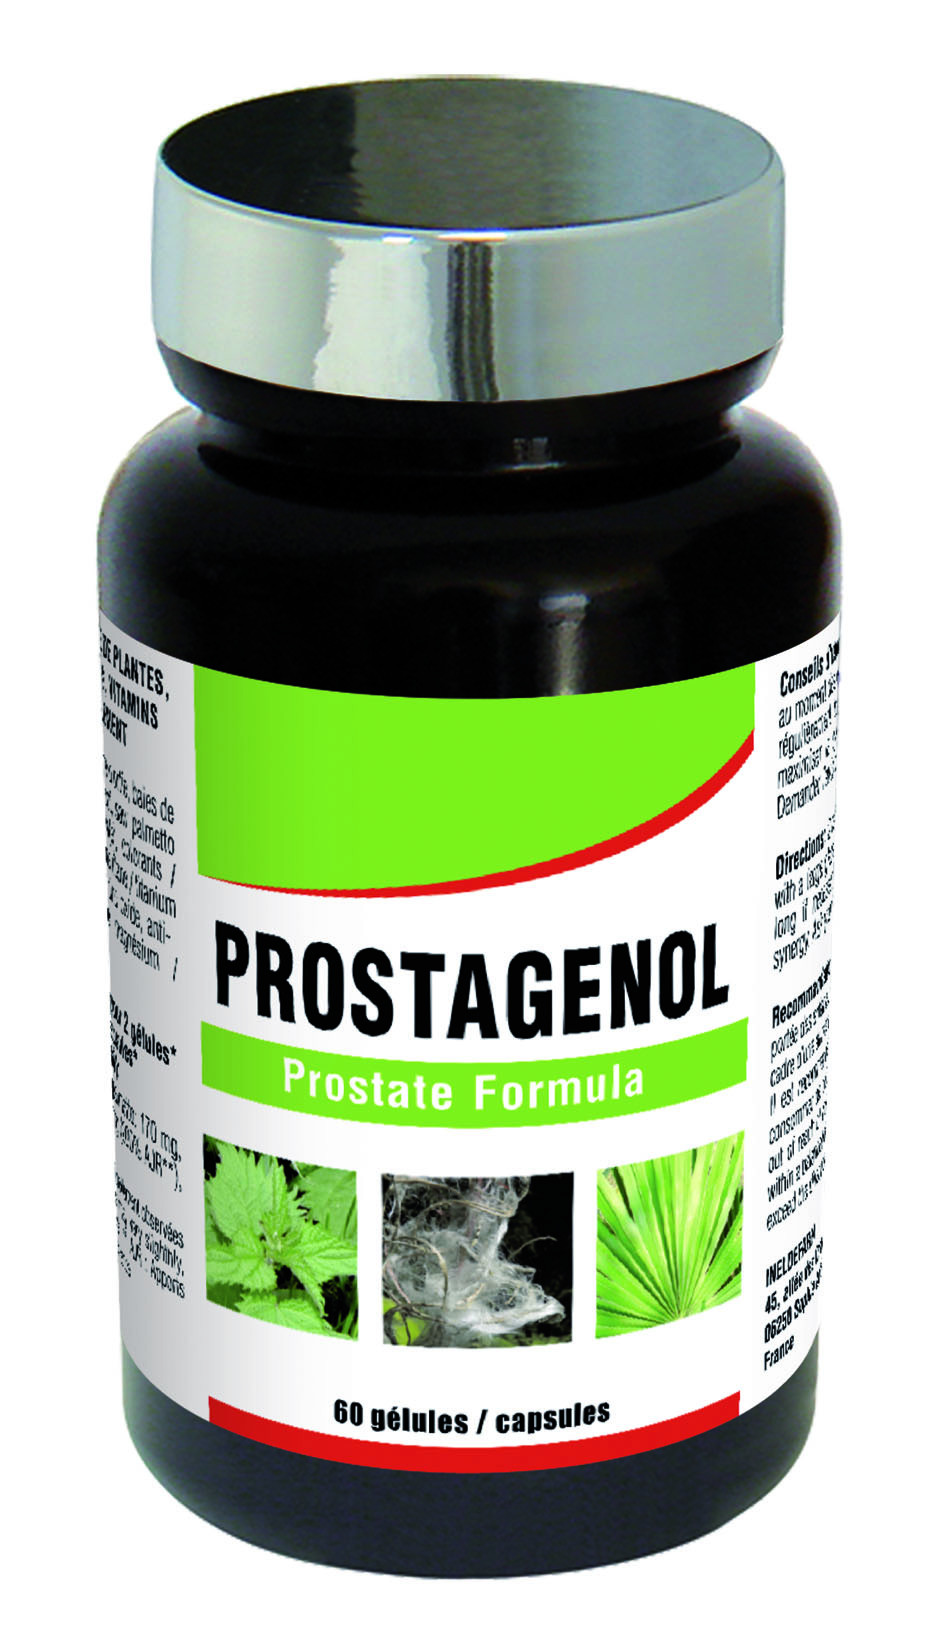 medicament prostate naturel)